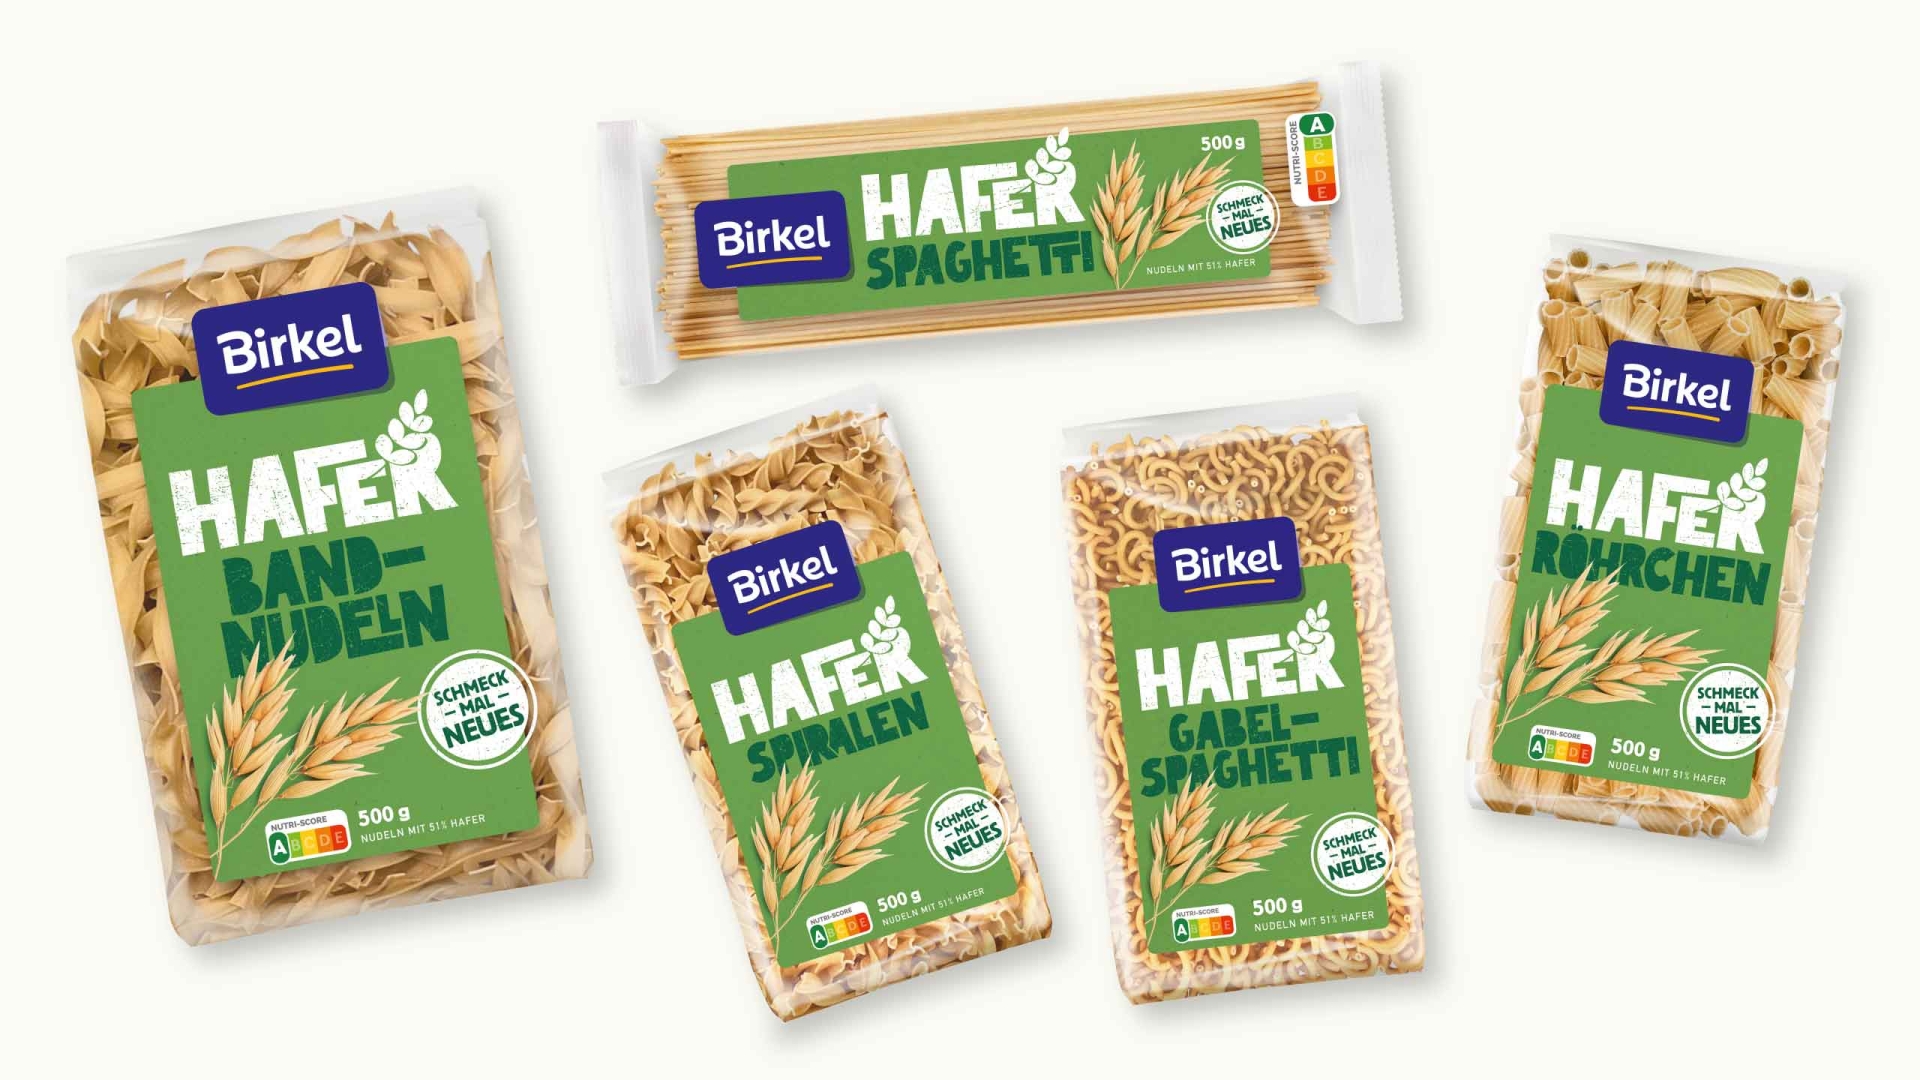 Birkel oats